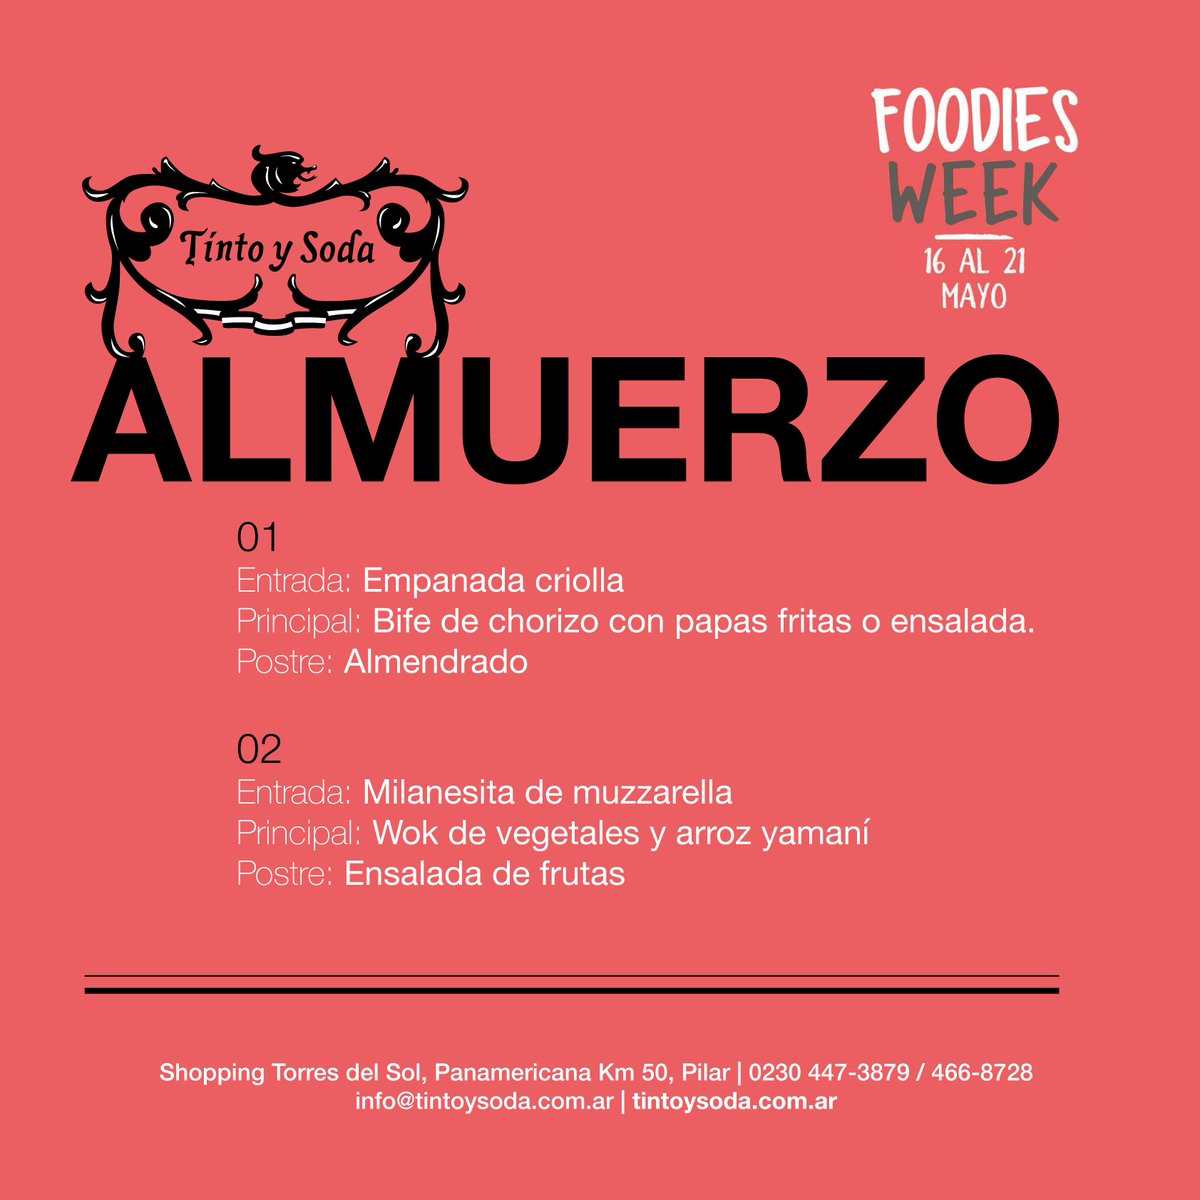 Foodies Week en Tinto y Soda!!! Almuerzo $200 de martes a viernes. Sábado y Domingo: bebidas no incluídas./ Cena $350 #FoodiesWeek